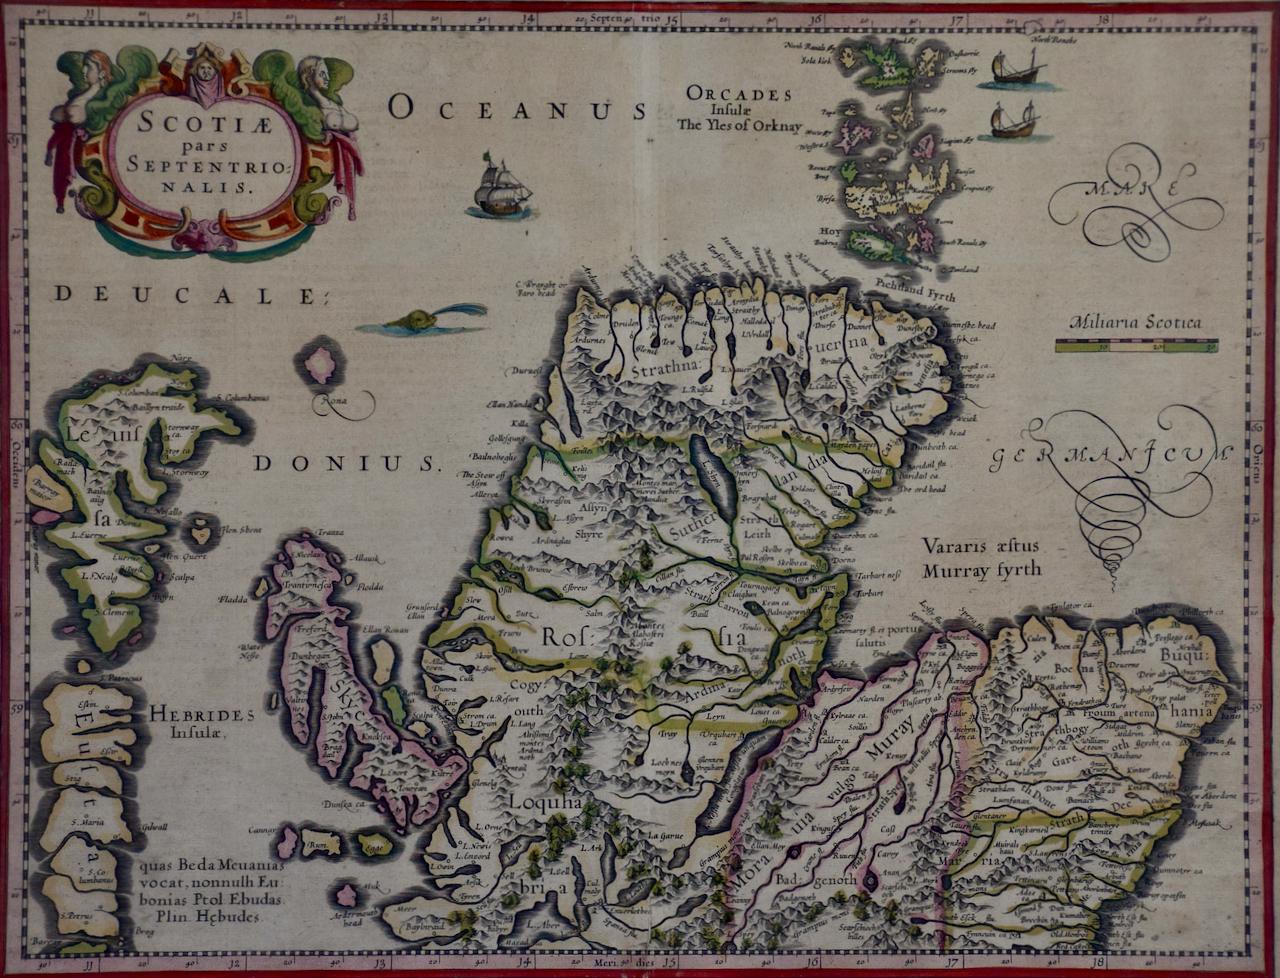 Carte du XVIIe siècle colorée à la main de l'Écosse du Nord par Mercator - Print de Gerard Mercator